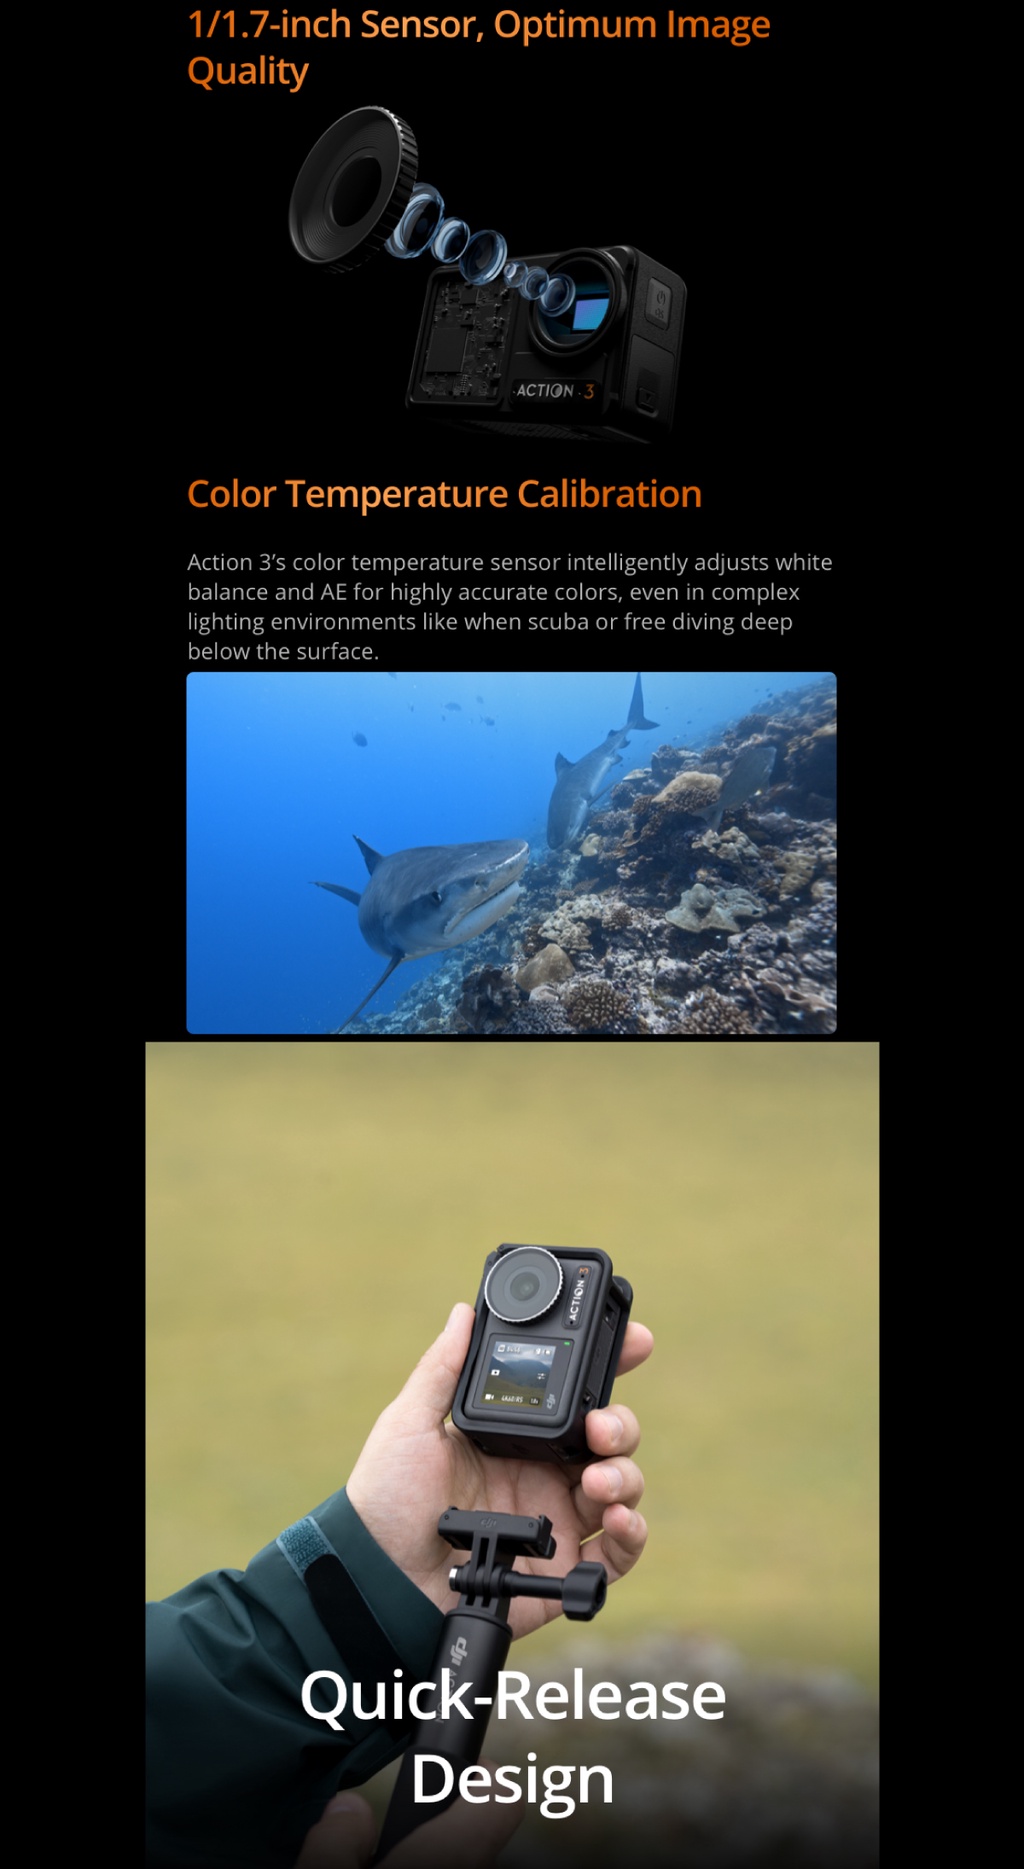 ข้อมูลเพิ่มเติมของ DJI Osmo Action 3 Adventure / Standard Combo กล้องถ่ายใต้น้ำ กันน้ำได้ 16 ม. ถ่ายภาพความละเอียด 12MP